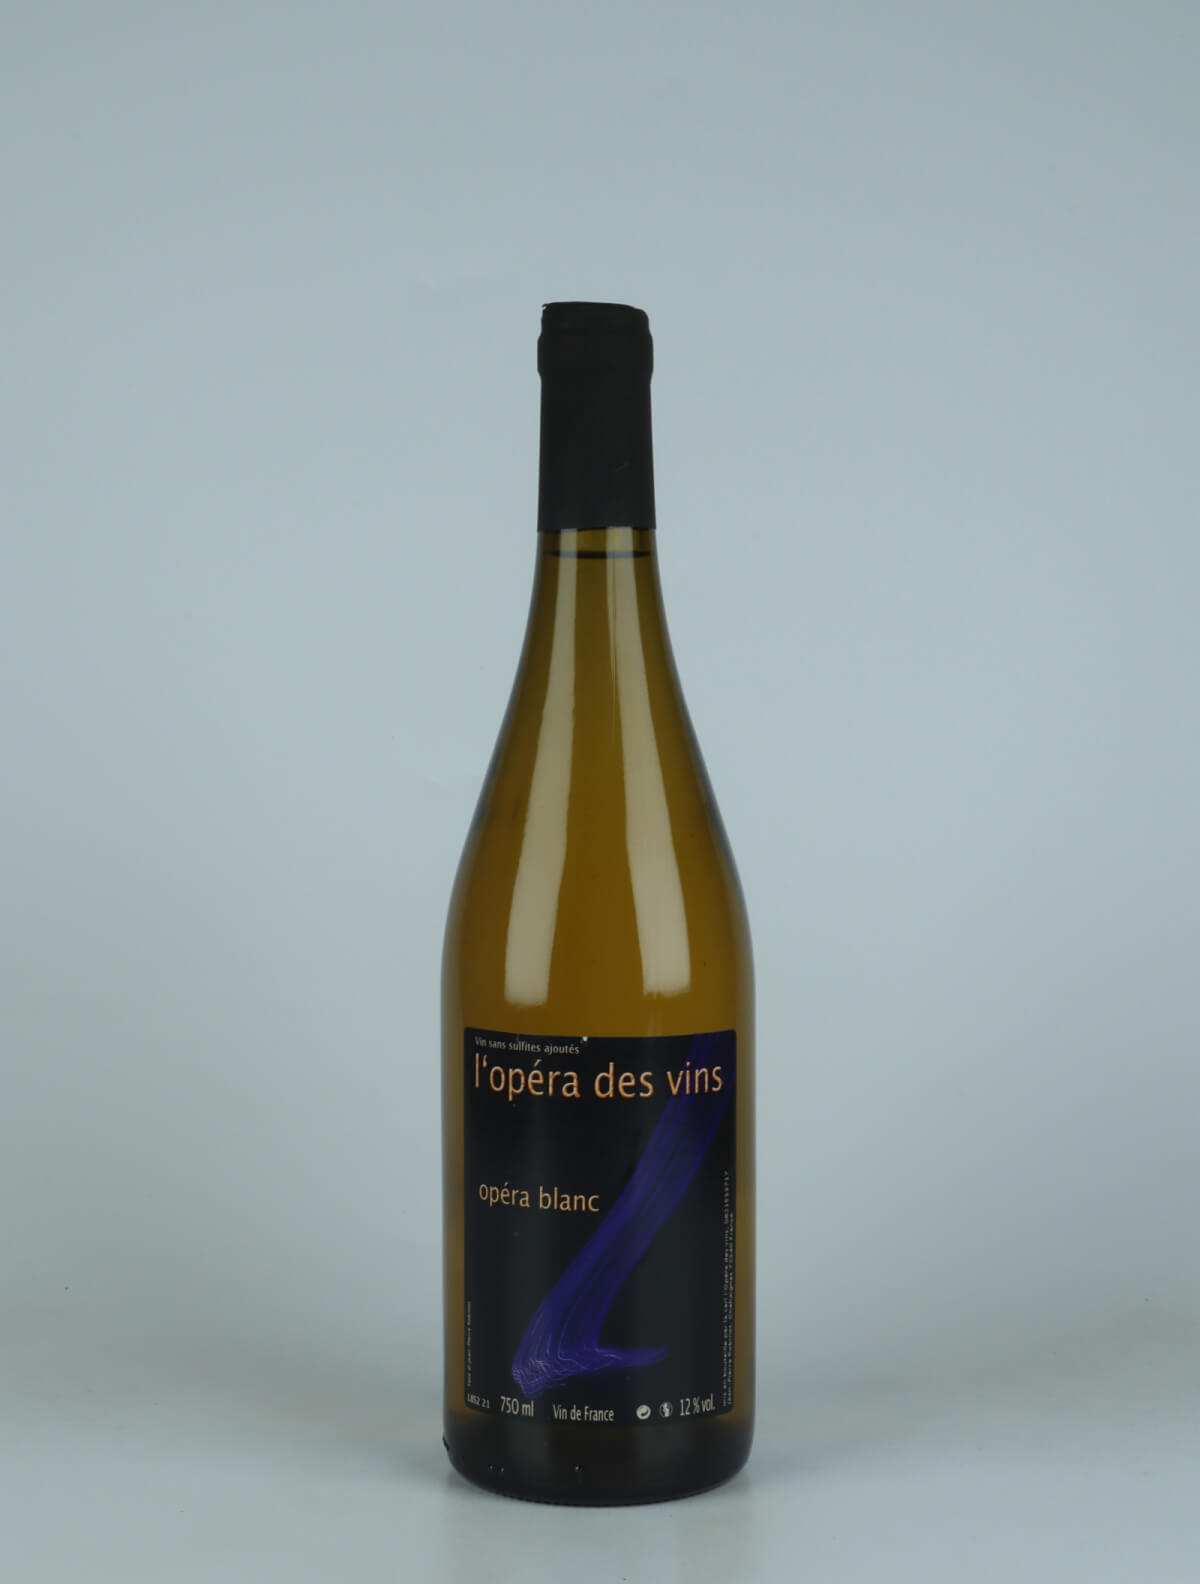 A bottle 2021 Opera Blanc White wine from Jean-Pierre Robinot, Loire in France